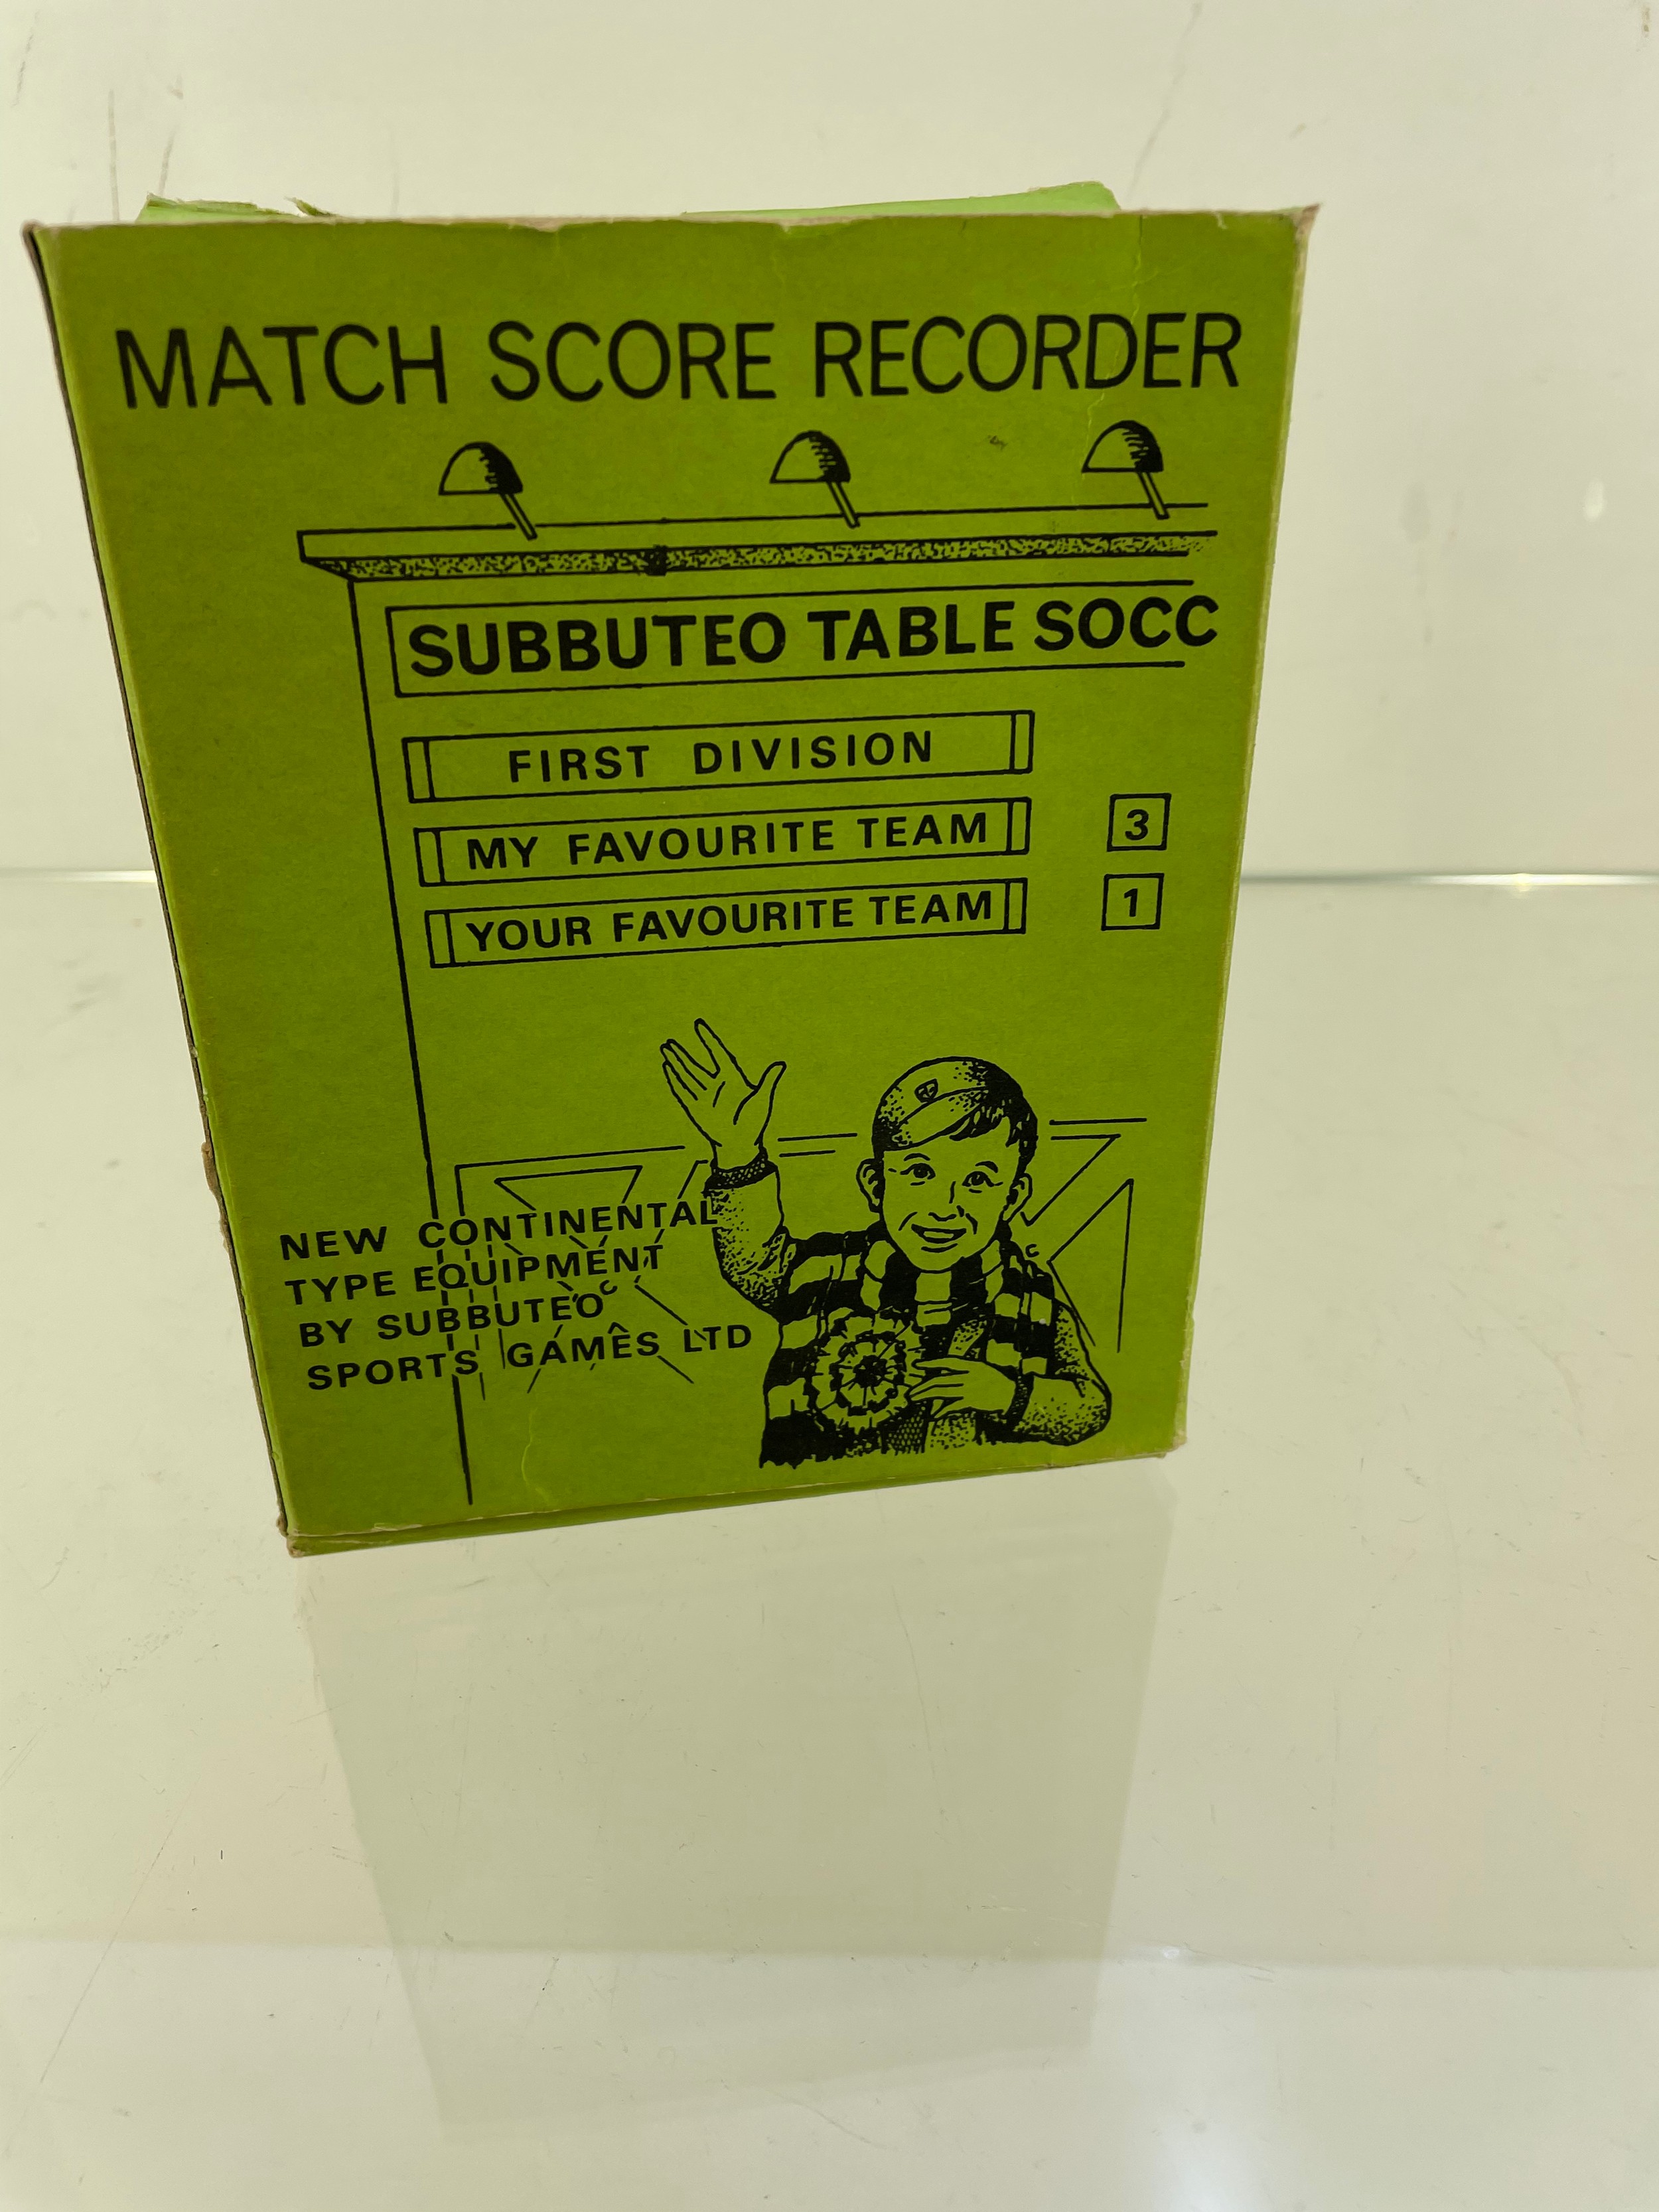 Subbueto table soccer match score recorder - Image 2 of 5